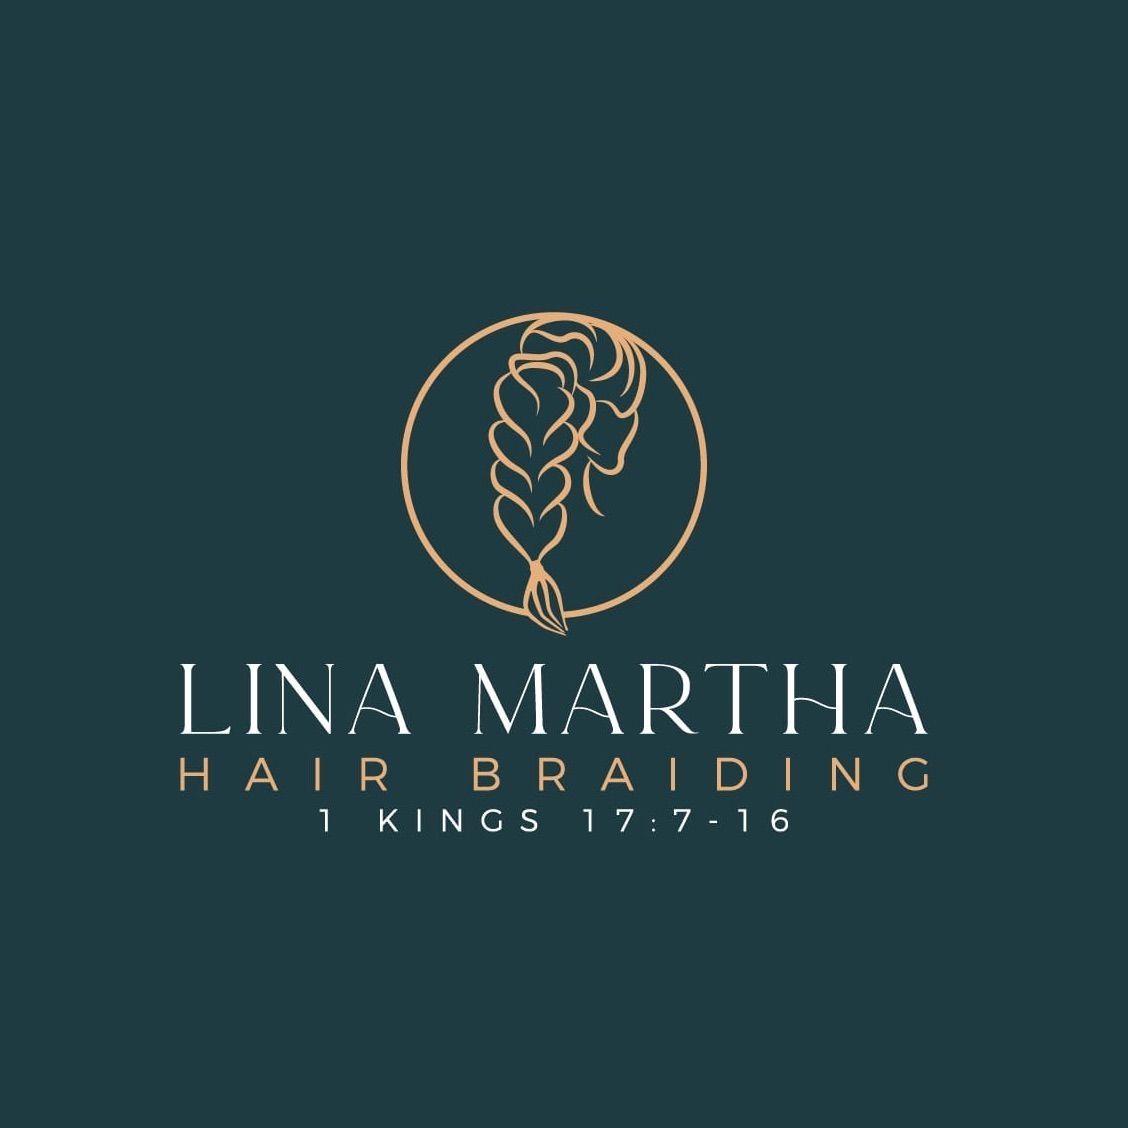 Lina Martha Hair Braiding, 9331 Annapolis Rd, Suite 310, Lanham, 20706